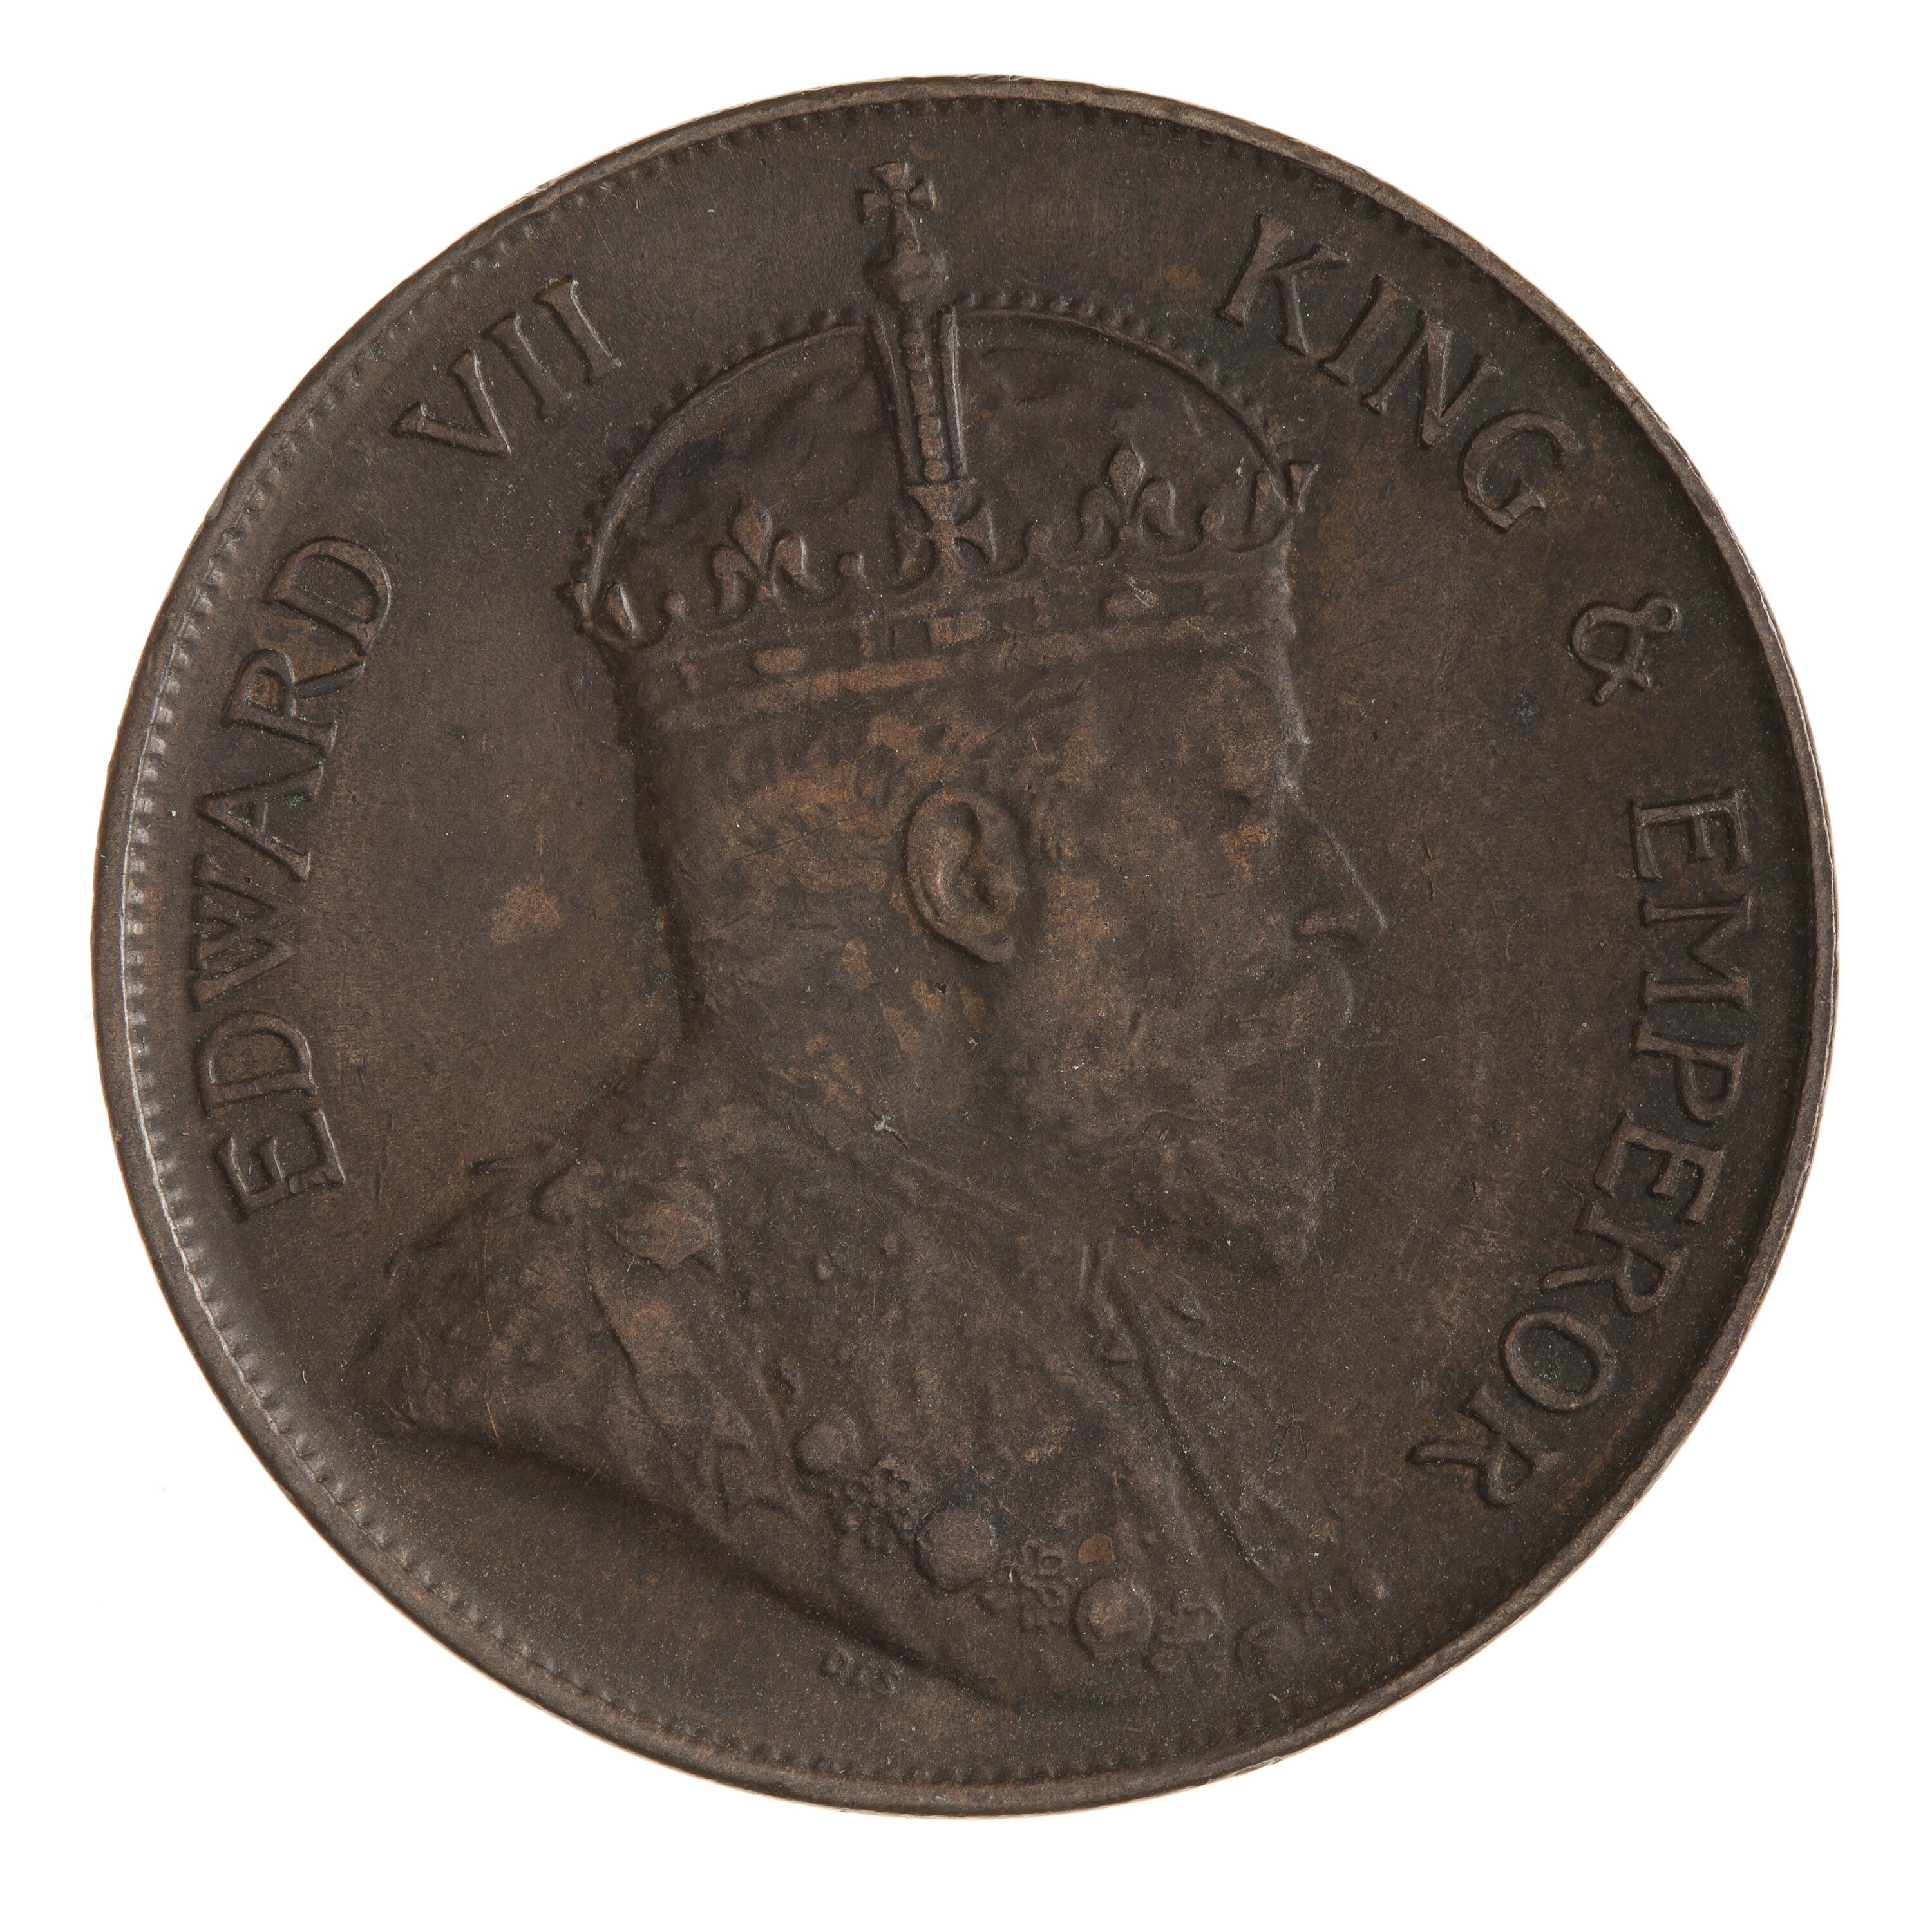 Coin - 1 Cent, Hong Kong, 1905